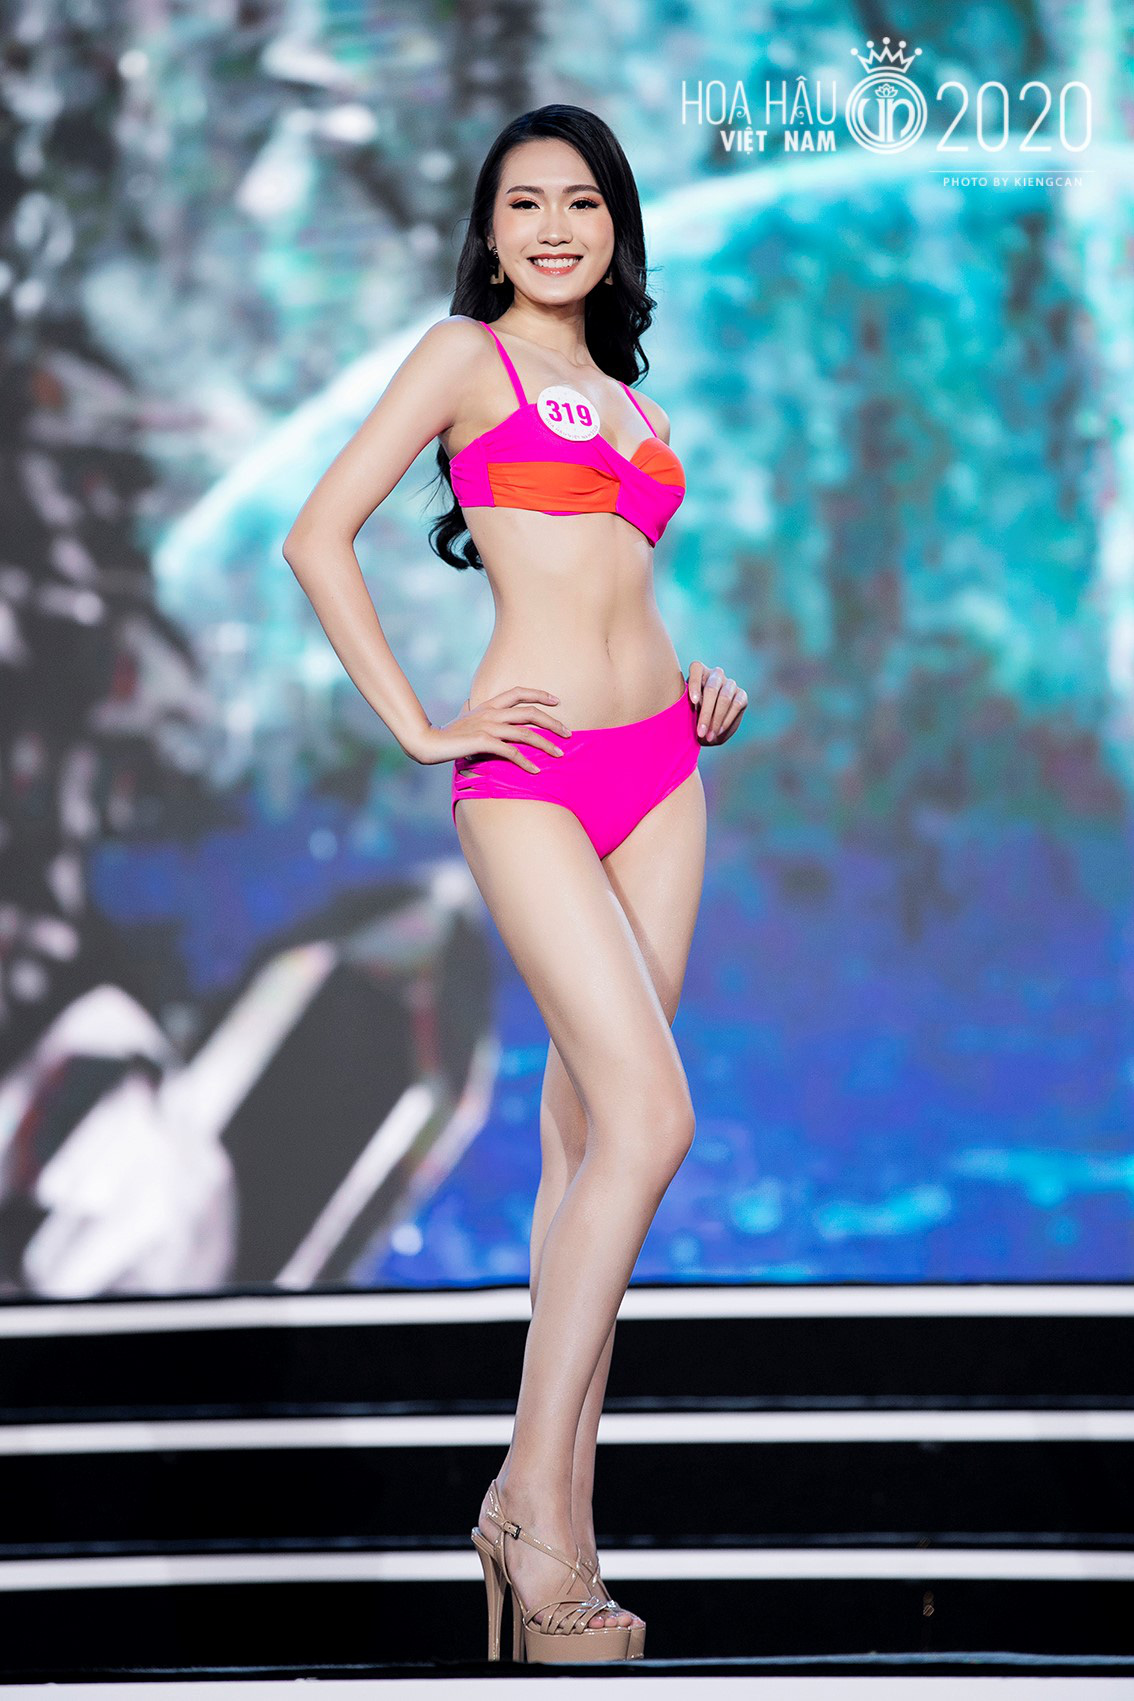 Chung kết Hoa hậu Việt Nam 2020 đã tìm ra được 35 ứng cử viên sáng giá - Ảnh 5.